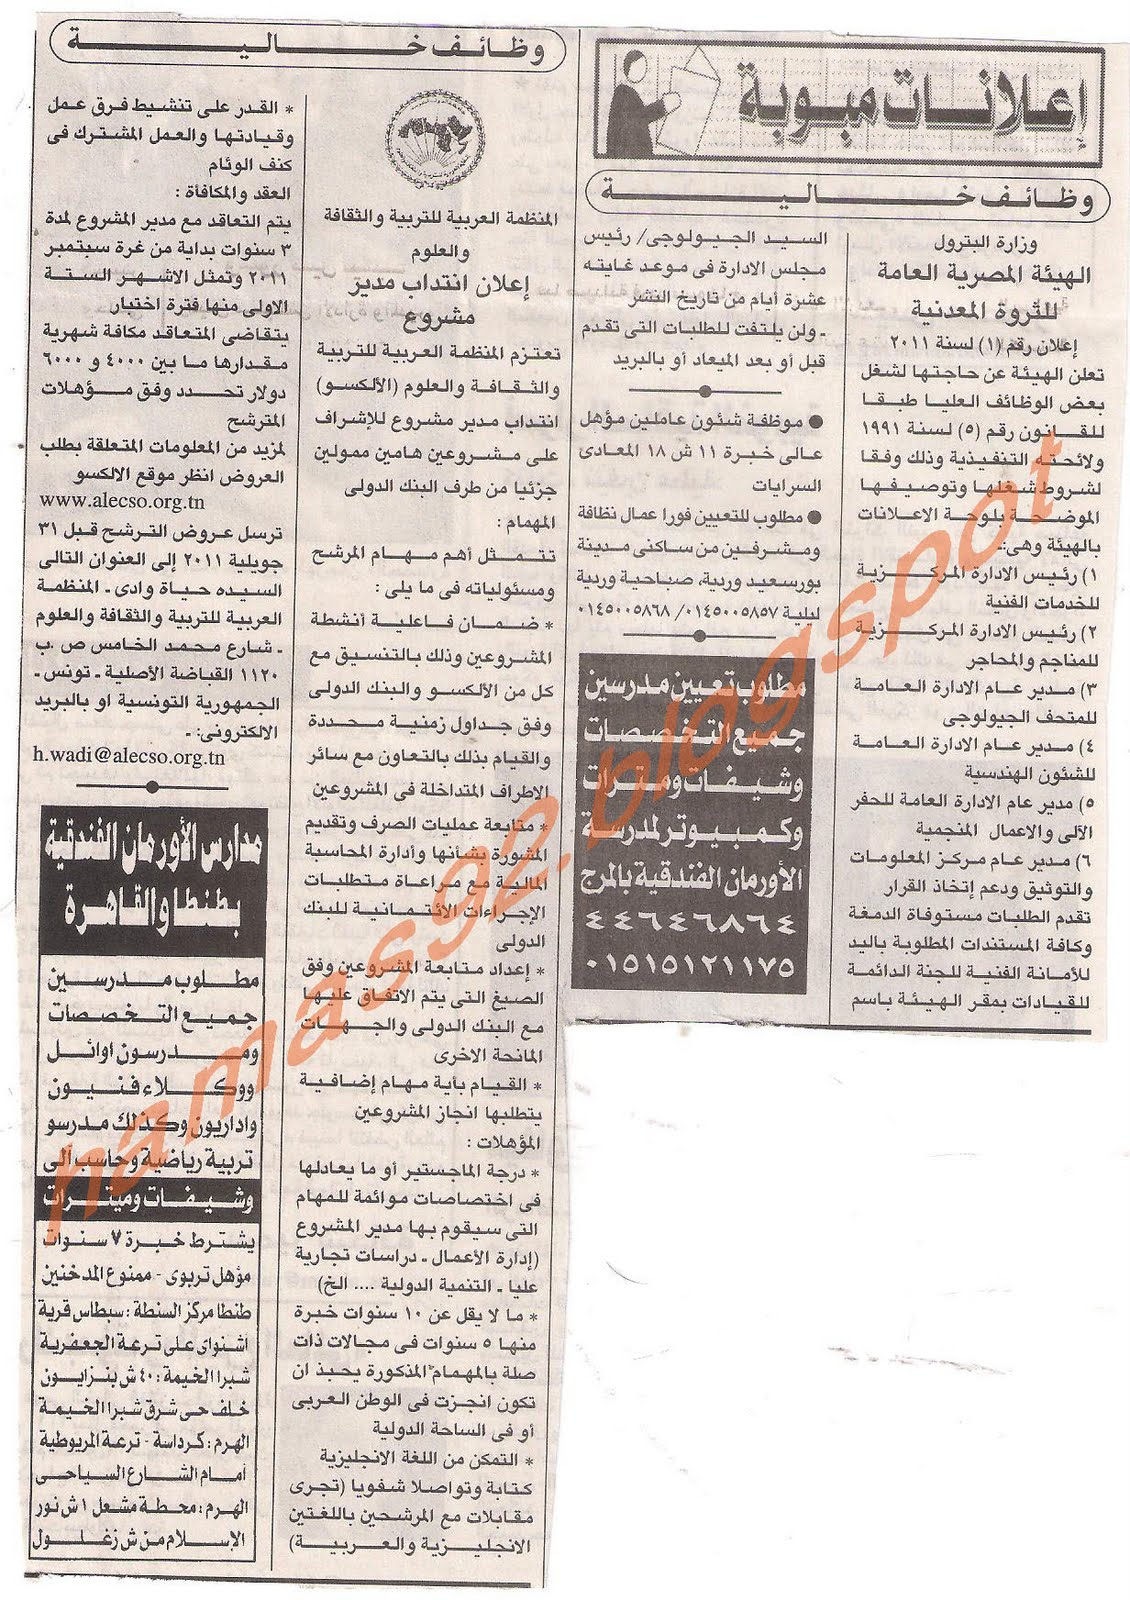 وظائف خالية من جريدة الاهرام الثلاثاء 5 يوليو 2011 Picture+001